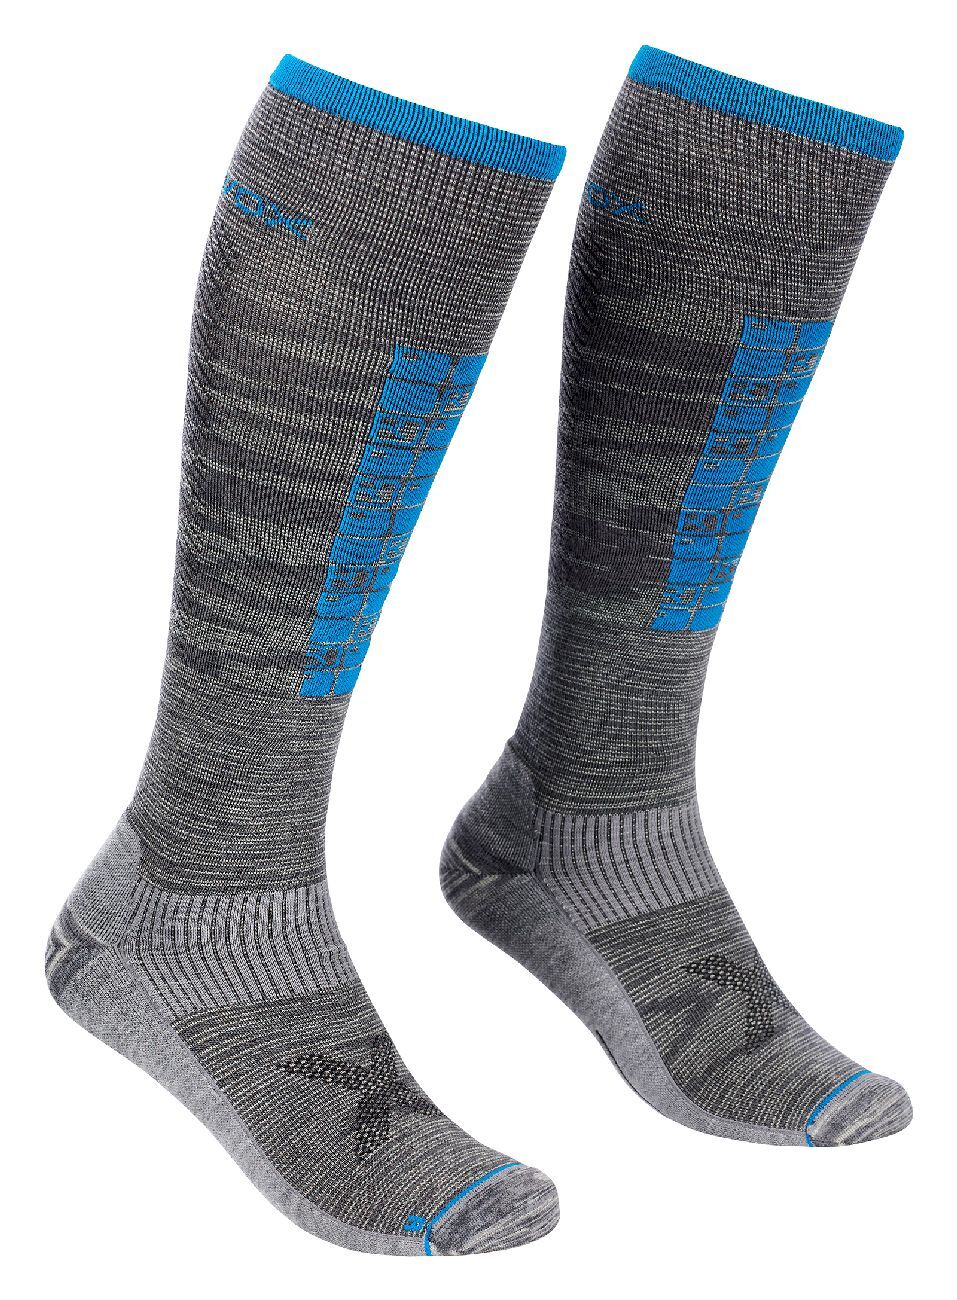 Ortovox Ski Compression Long Socks - Ski socks - Men's